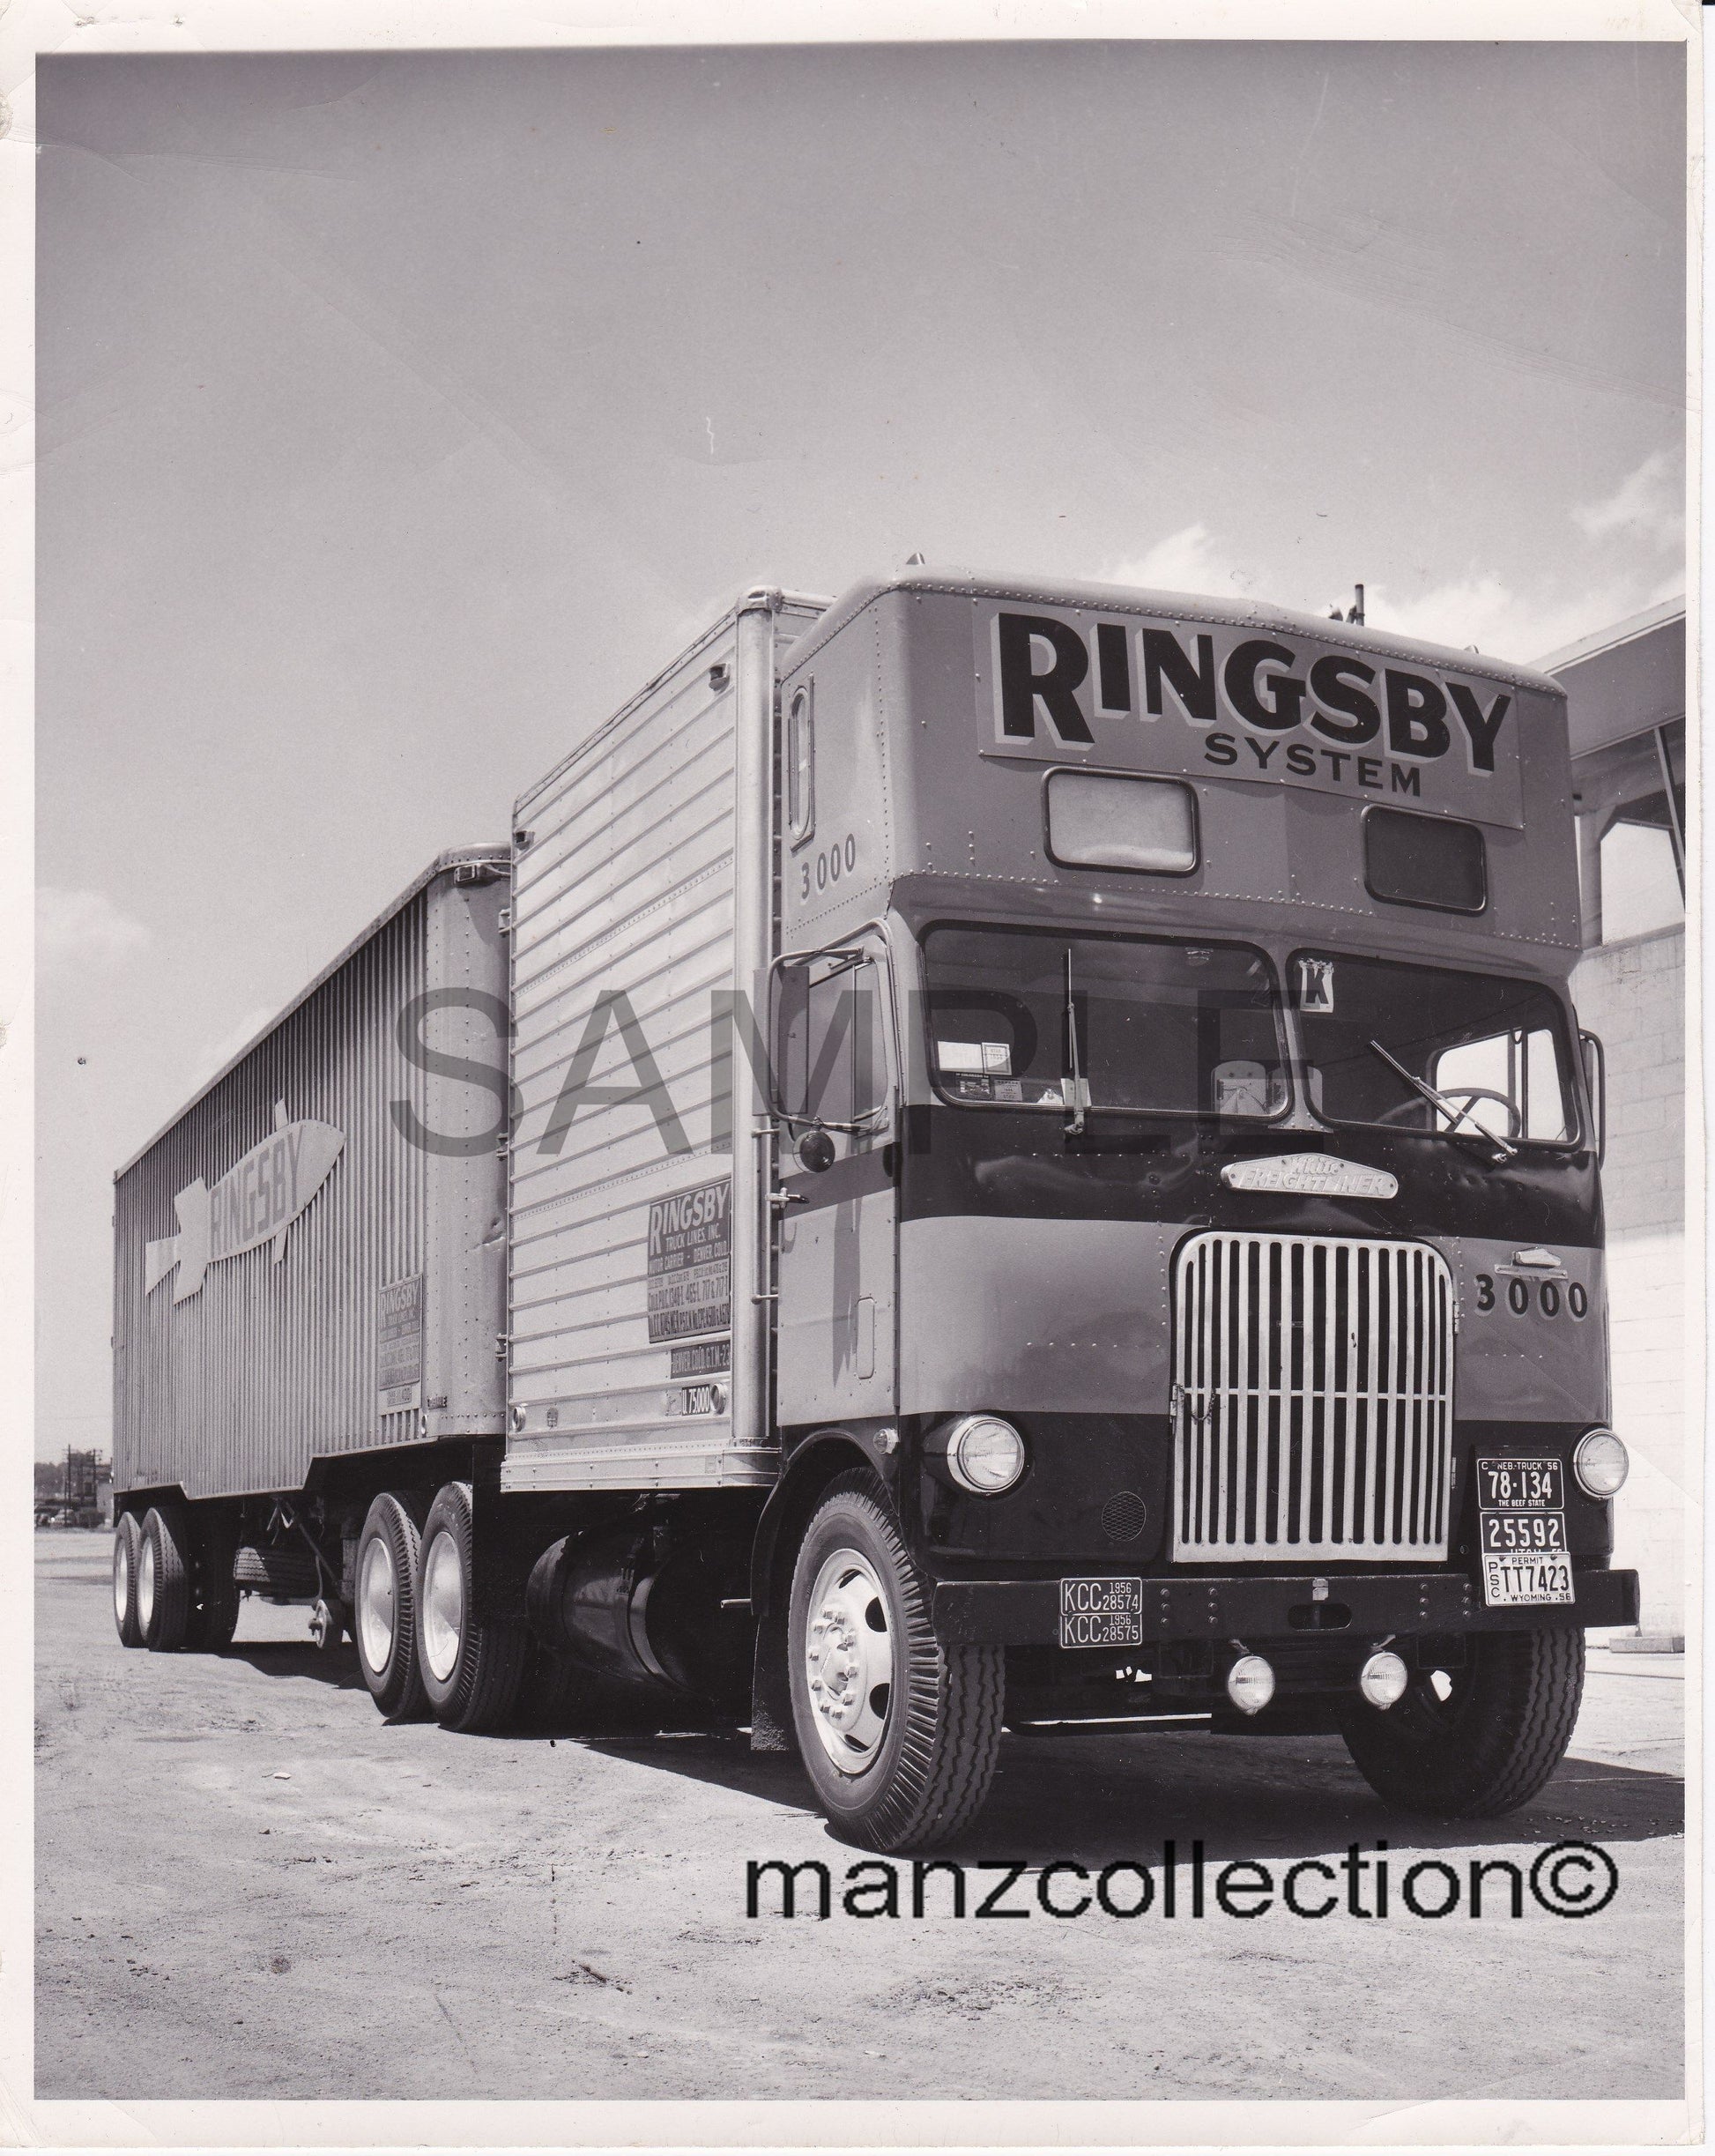 8X10 b & w semi-truck photo '50's WFL drom RINGSBY SYSTEM - Transportation Treasure